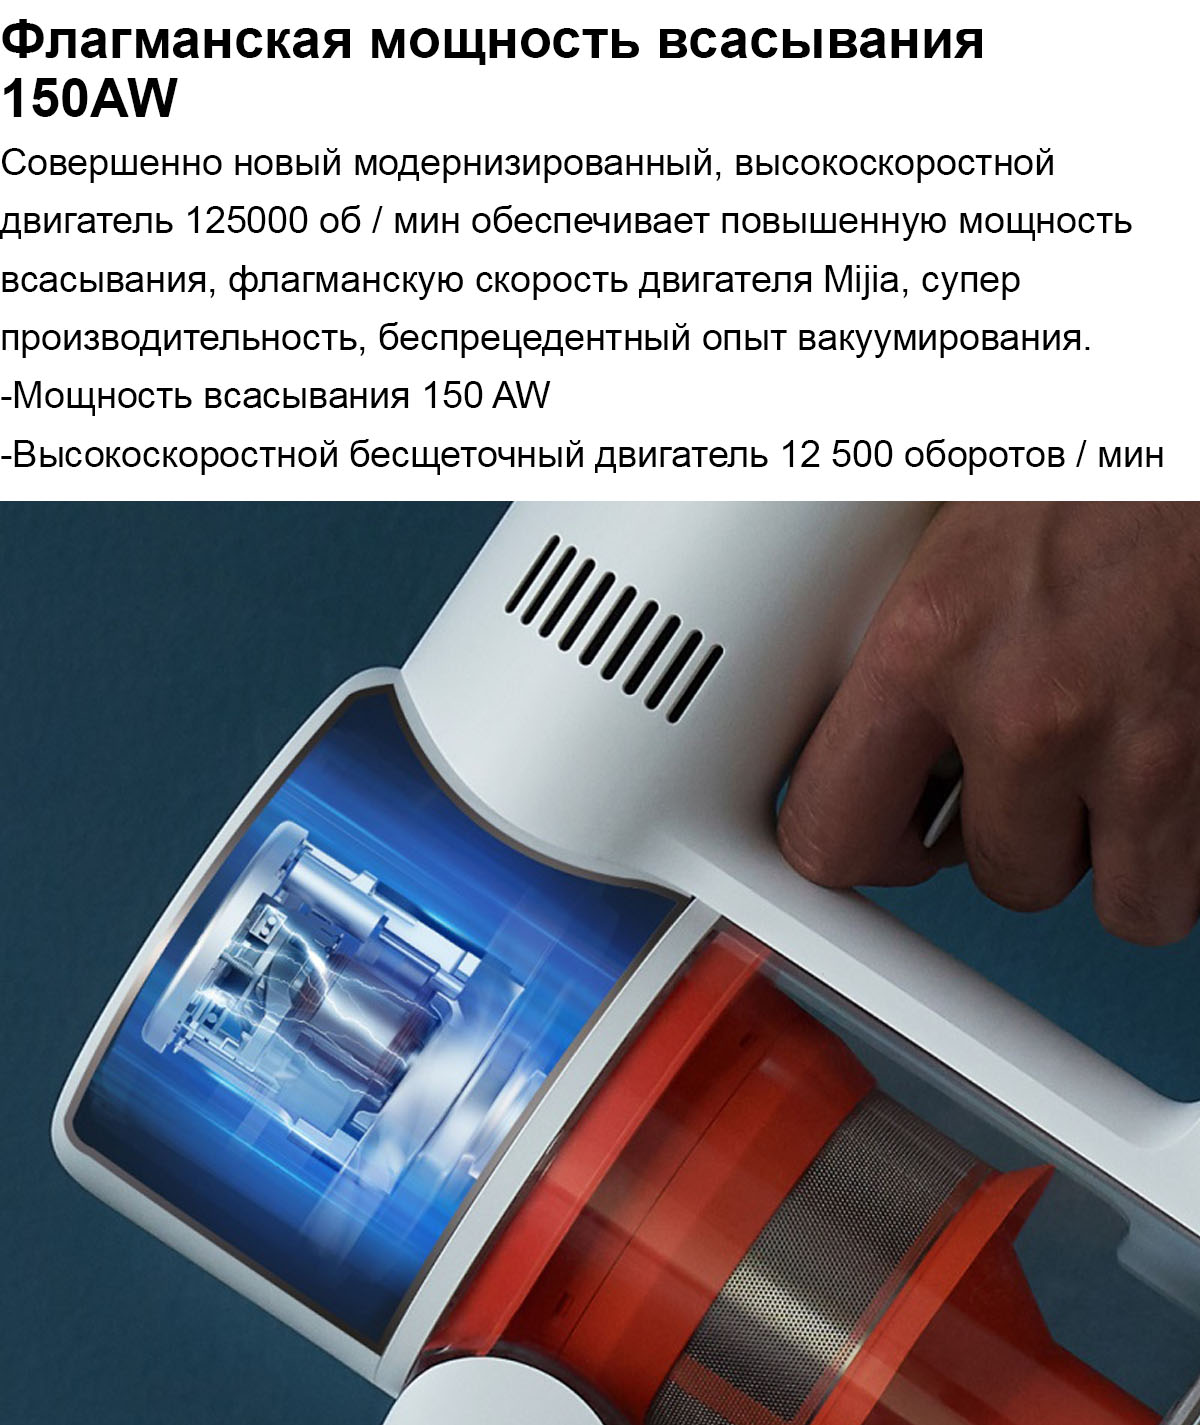 Беспроводной пылесос Xiaomi Mi Handheld Vacuum Cleaner Pro G10